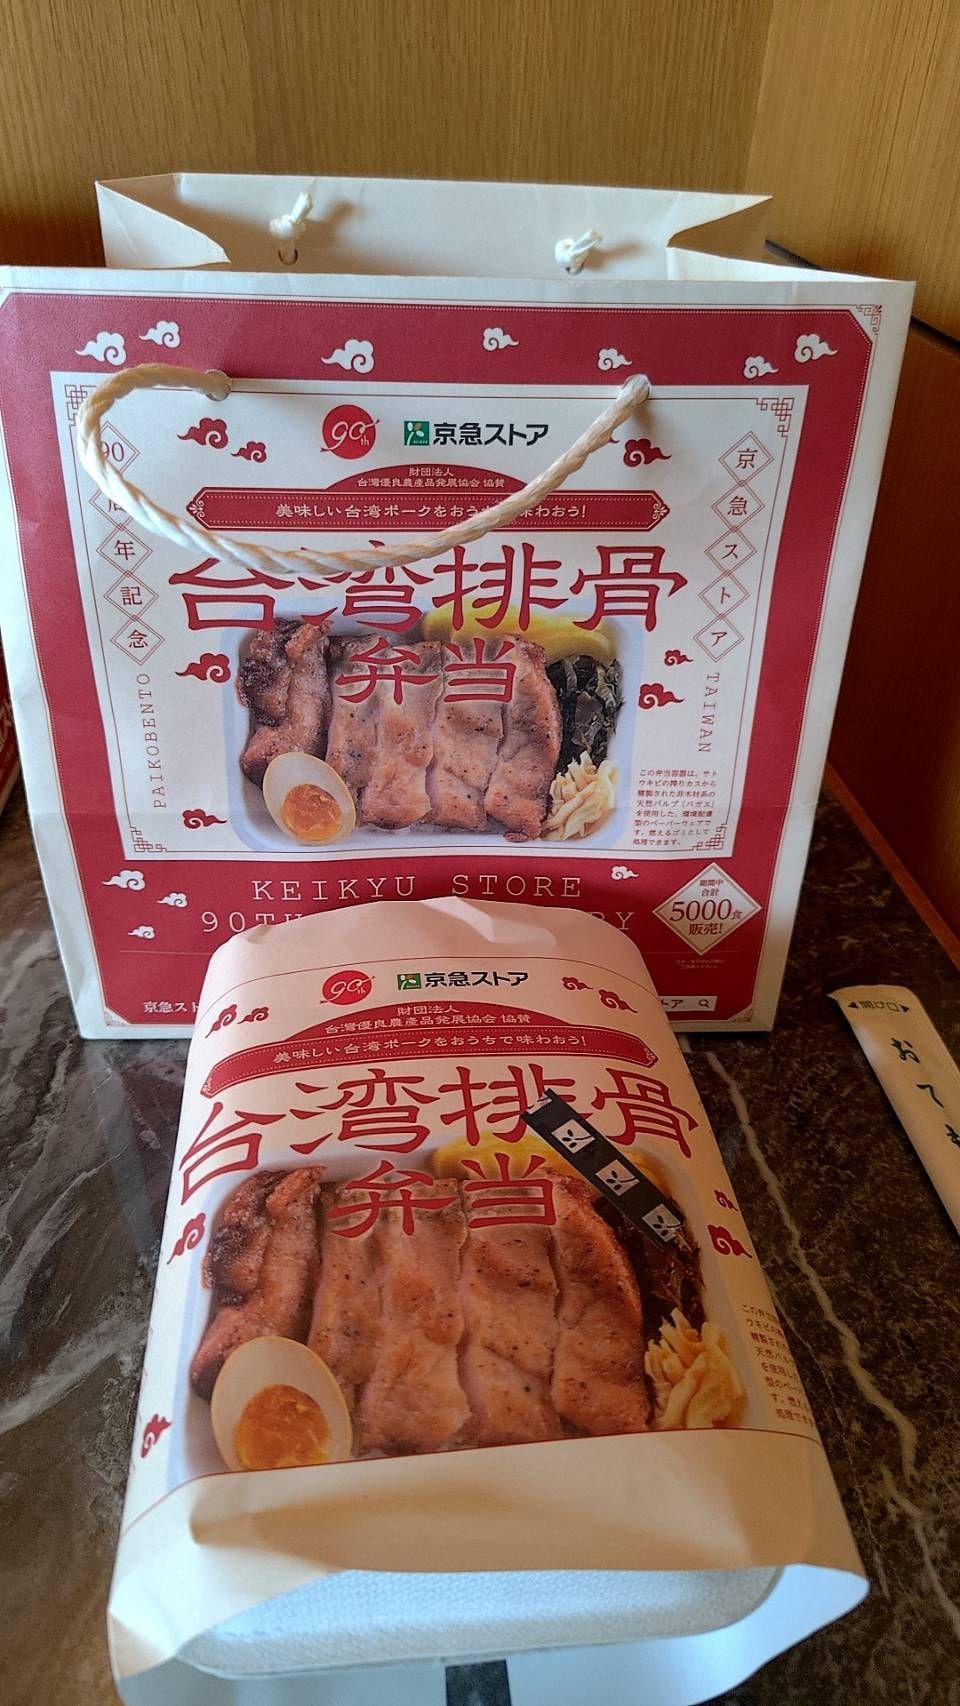 「臺灣排骨便當」原汁原味日本限量開賣 臺灣豬肉產品大受好評